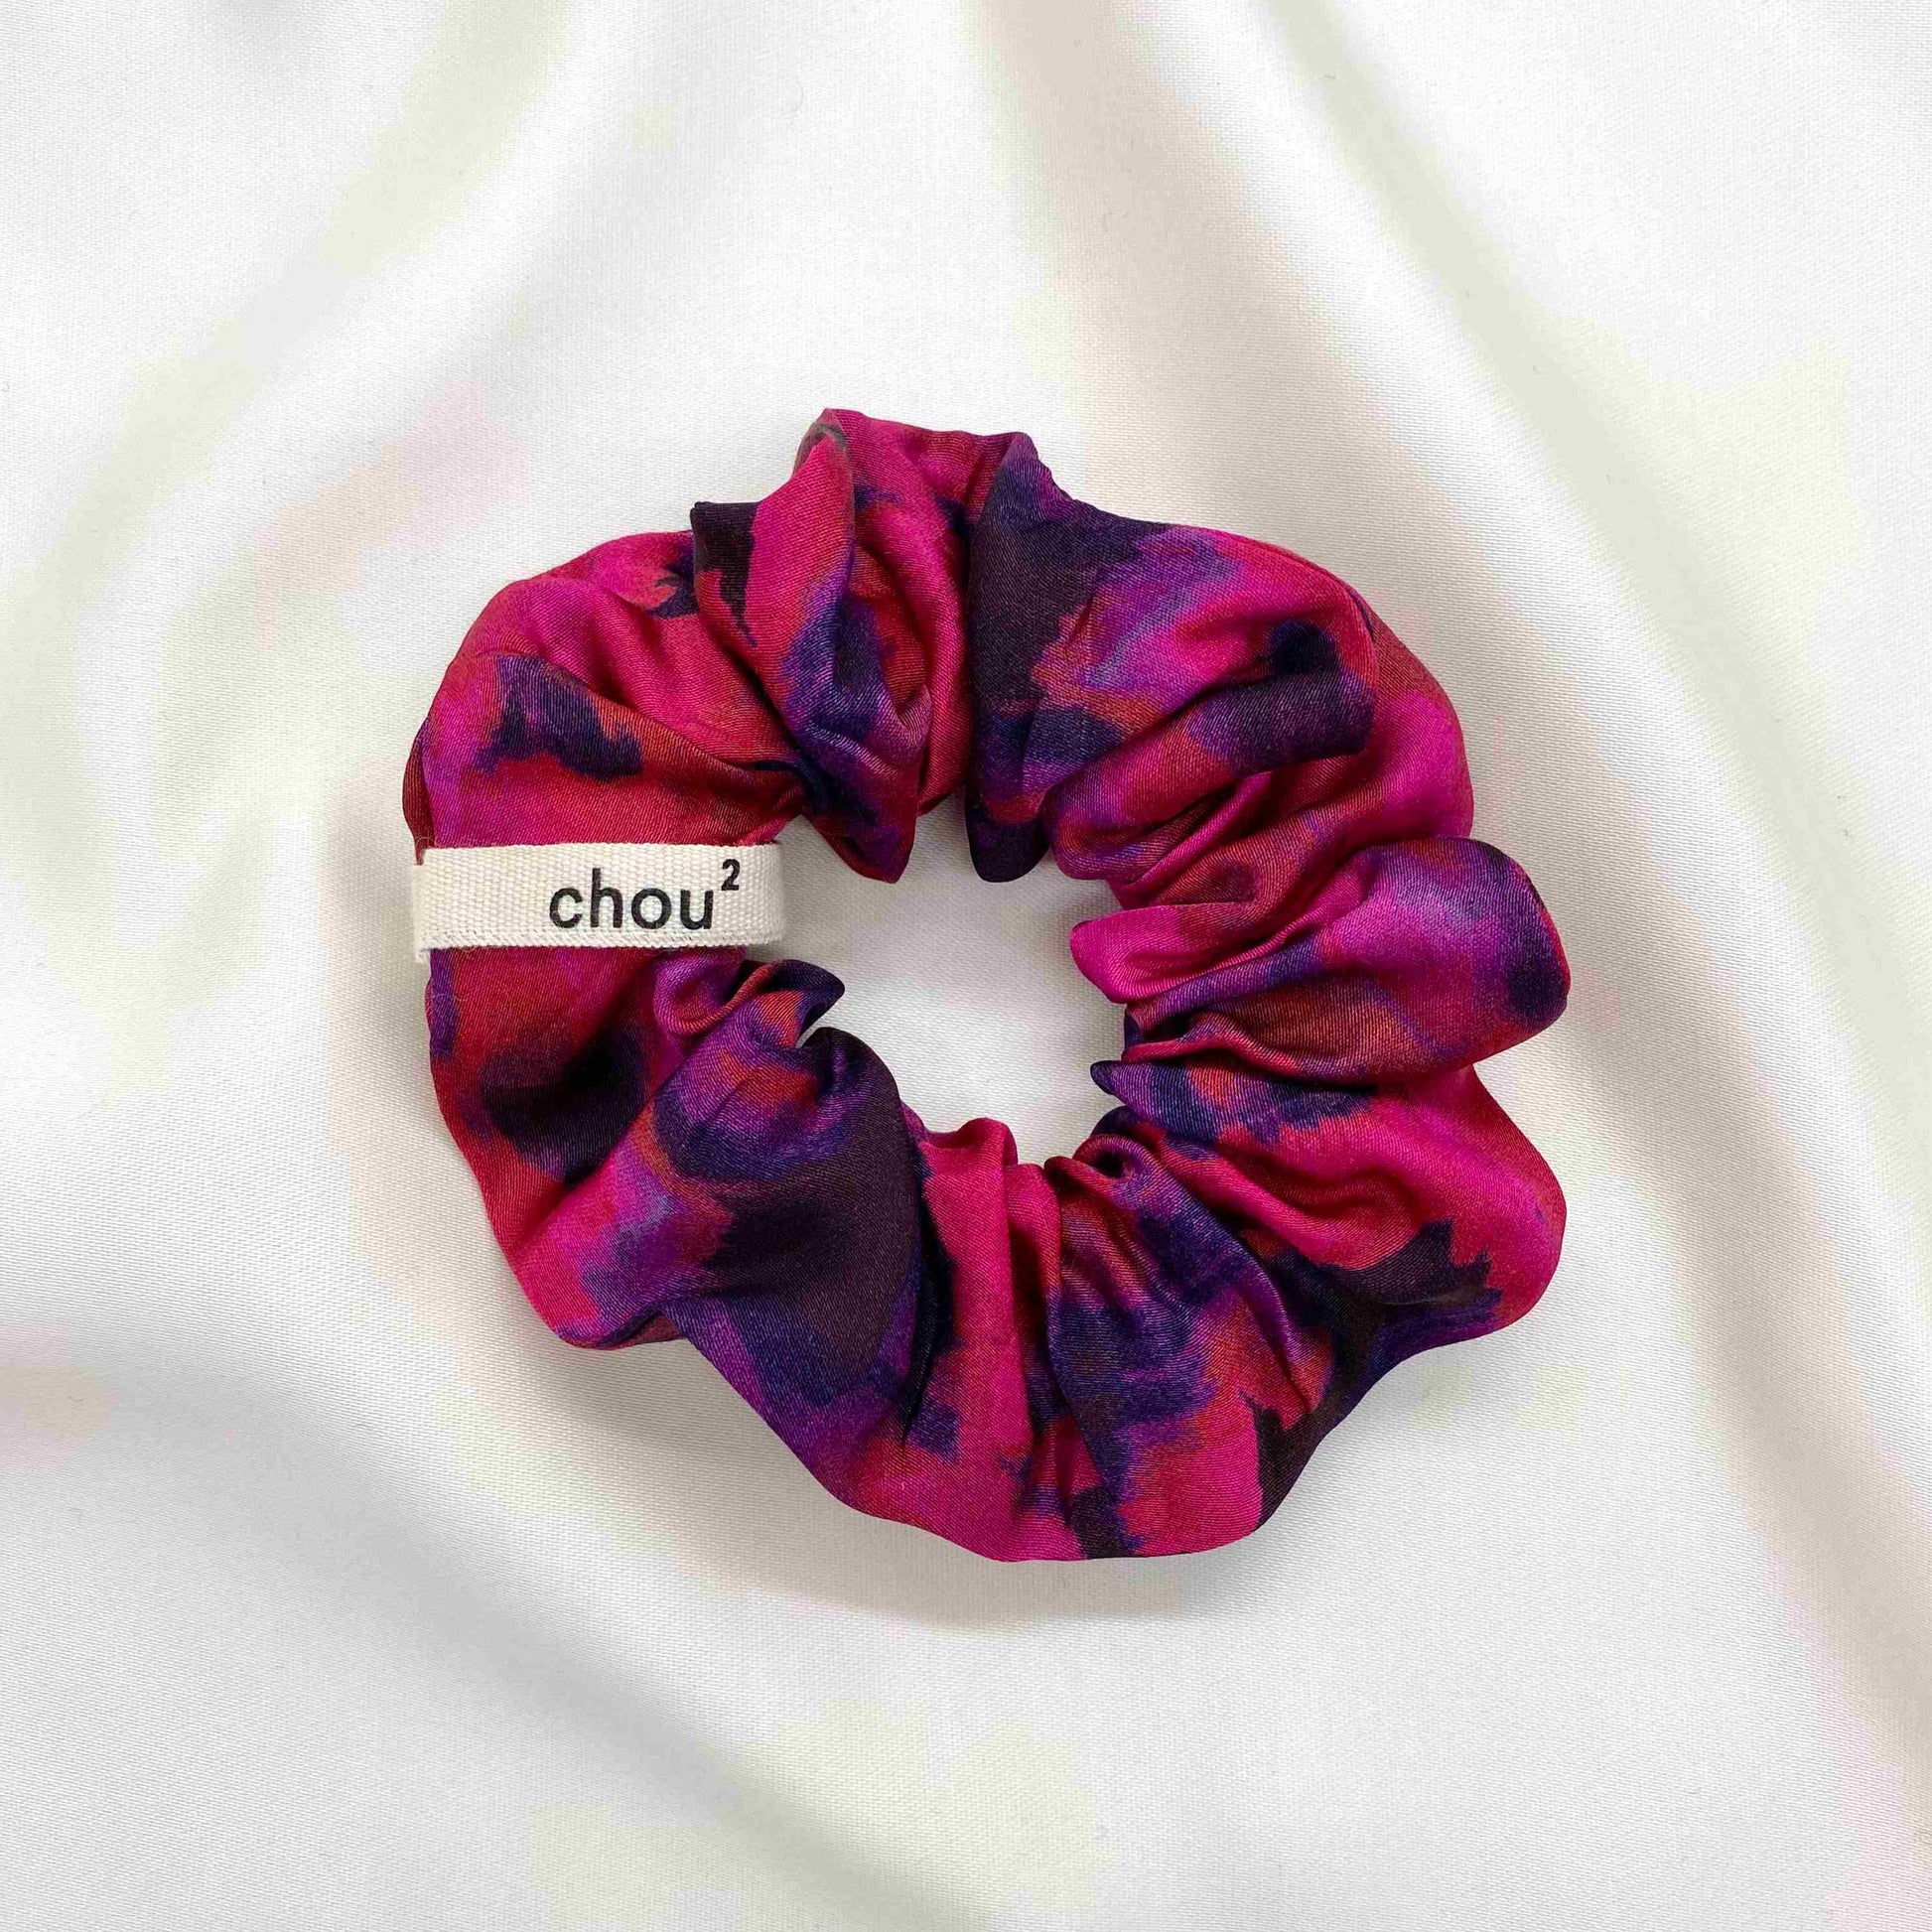 chouchou-imprime-rose-violet-france